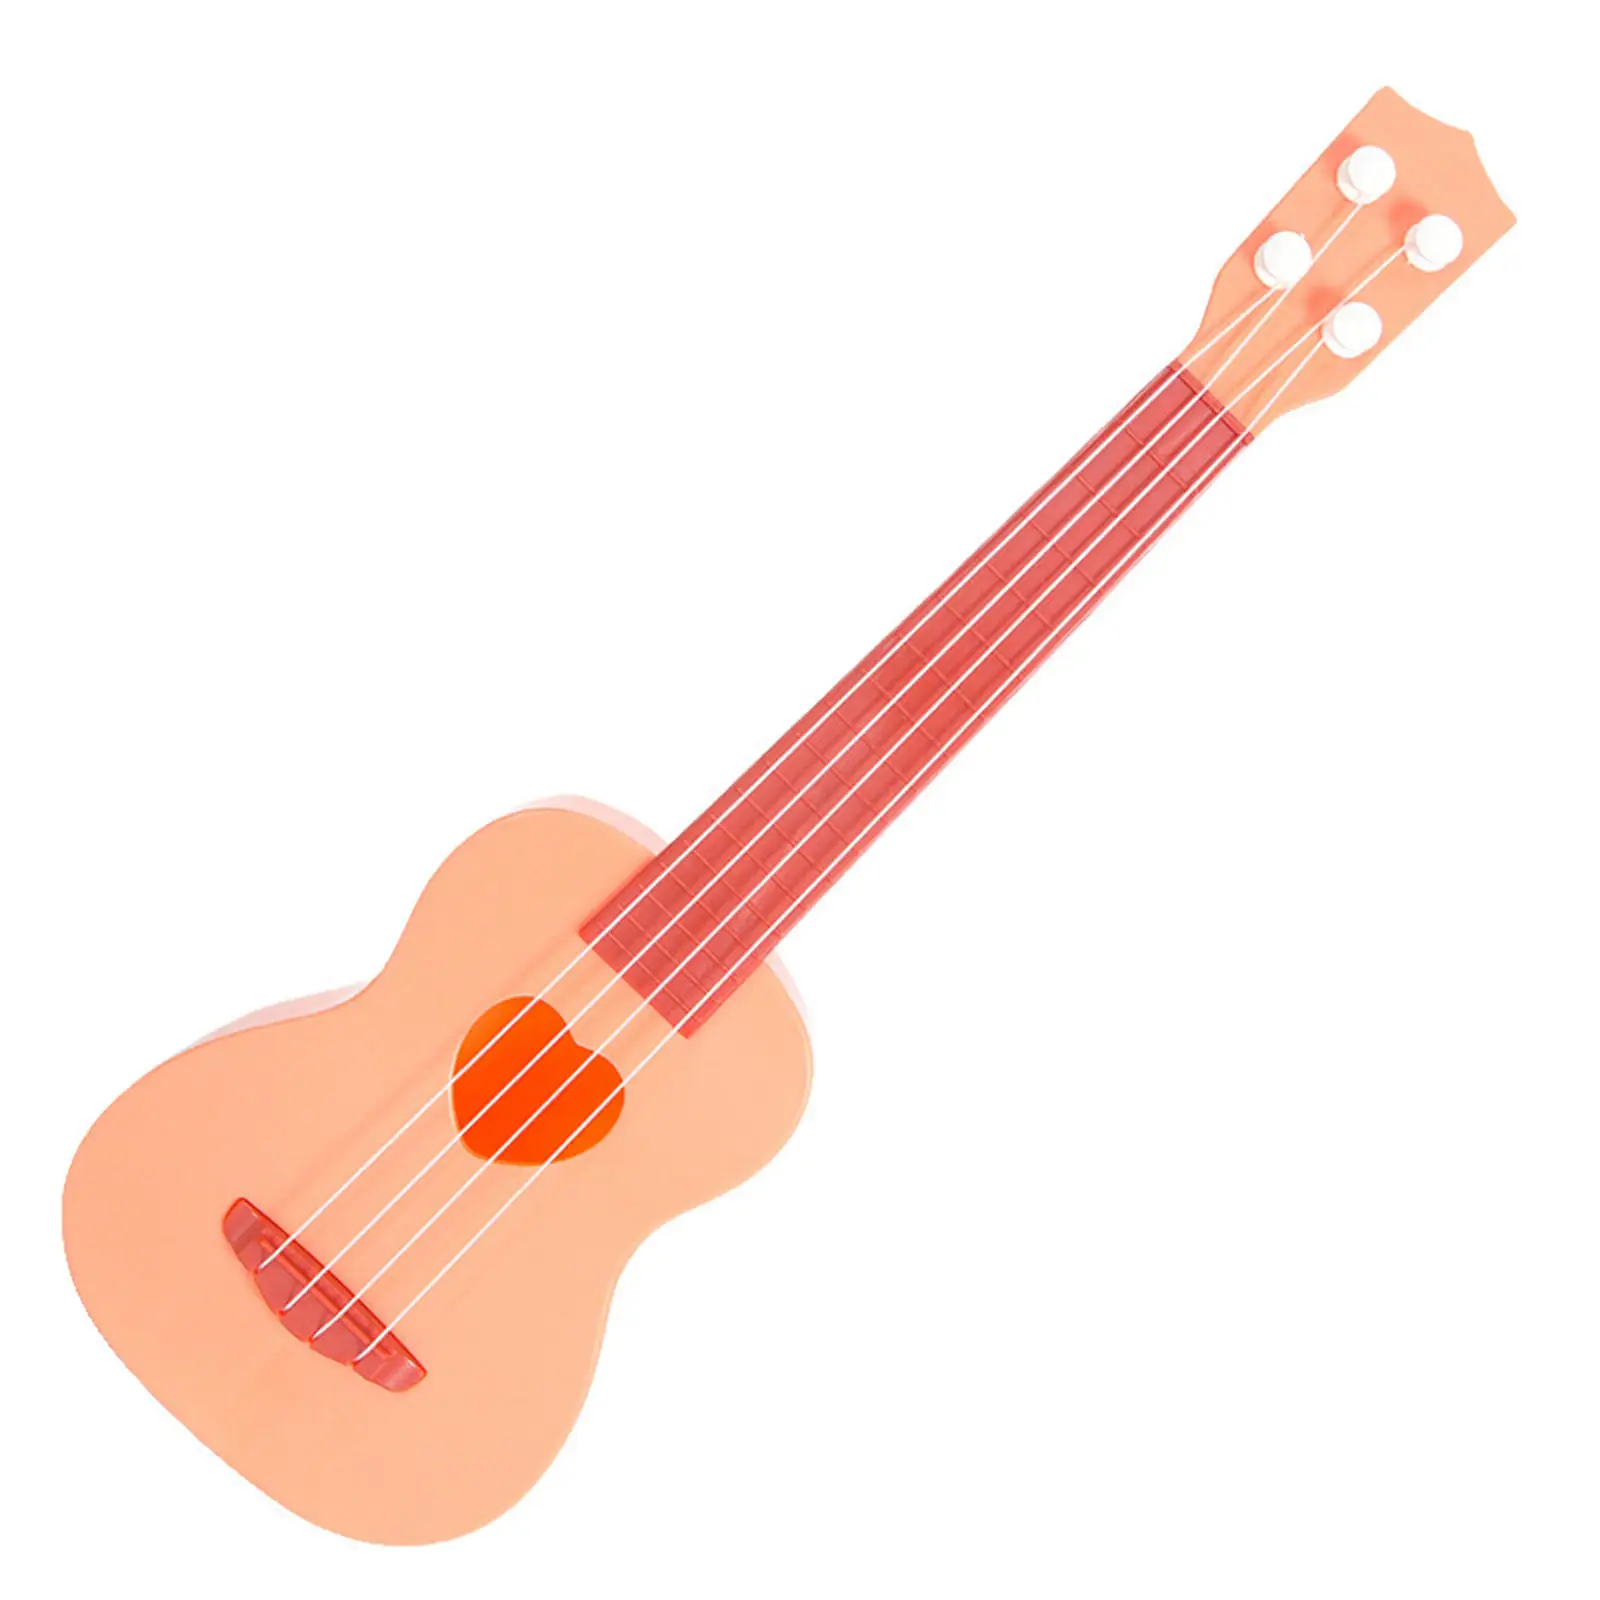 MILISTEN Niños Plástico Ukelele Guitarra Juguete 4 Cuerdas Dinosaurio Patrón Niño Instrumentos Musicales Juguete Mini Guitarra Juguetes Educativos para Niños Niños Niños 